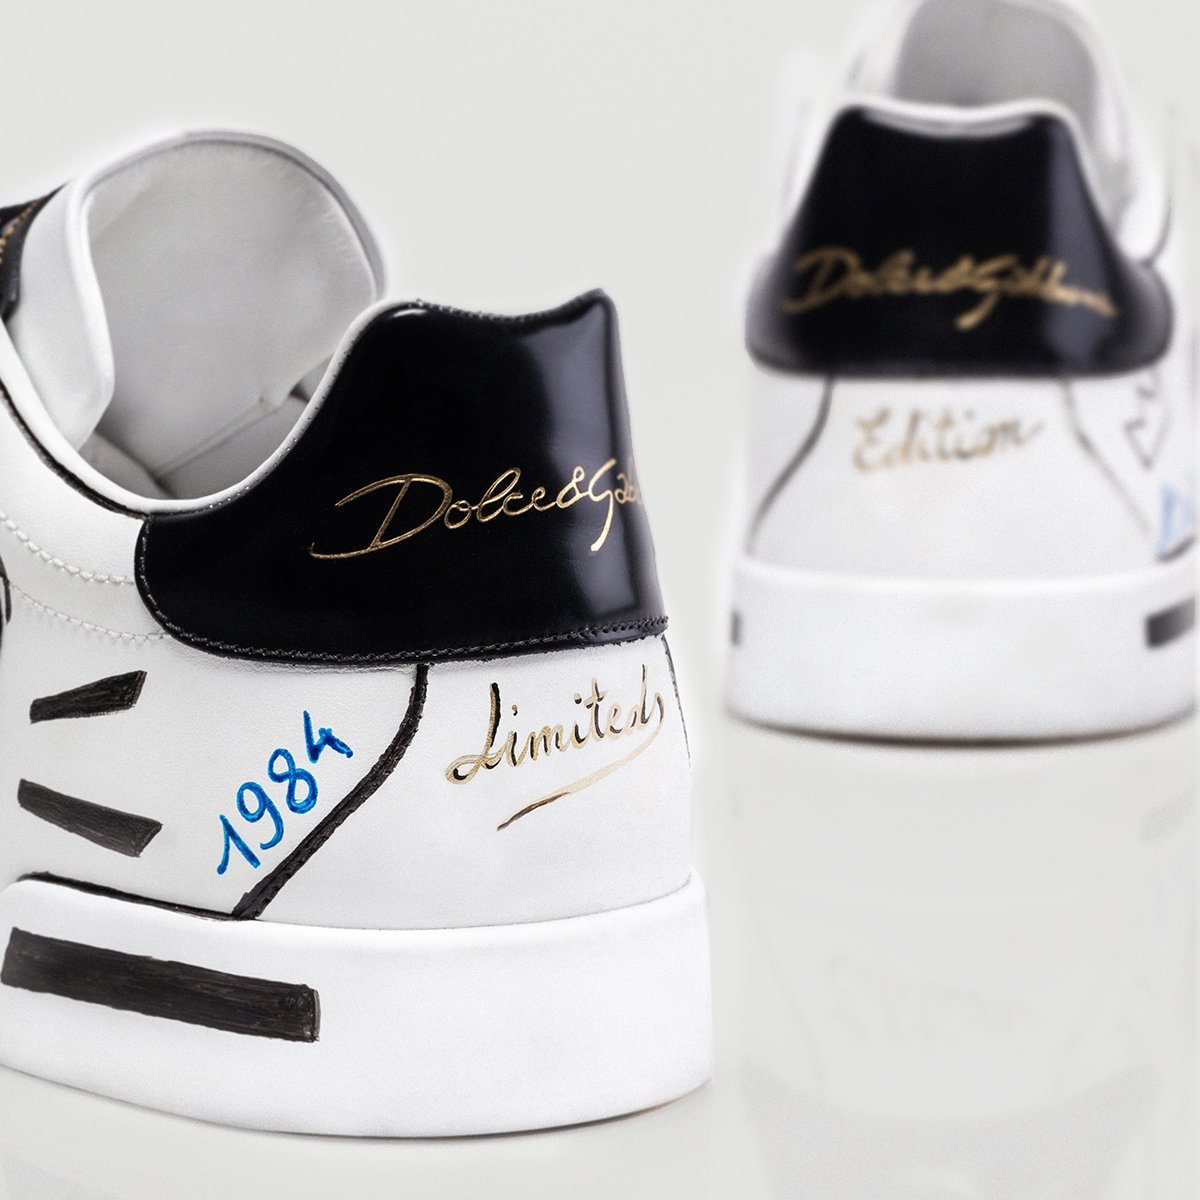 Dolce gabbana limited edition. Dolce Gabbana Sneakers. Sneakers Limited Edition. Aldimania Limited Edition обувь. Сникерсы Custom Zero Dolce Gabbana реплика.